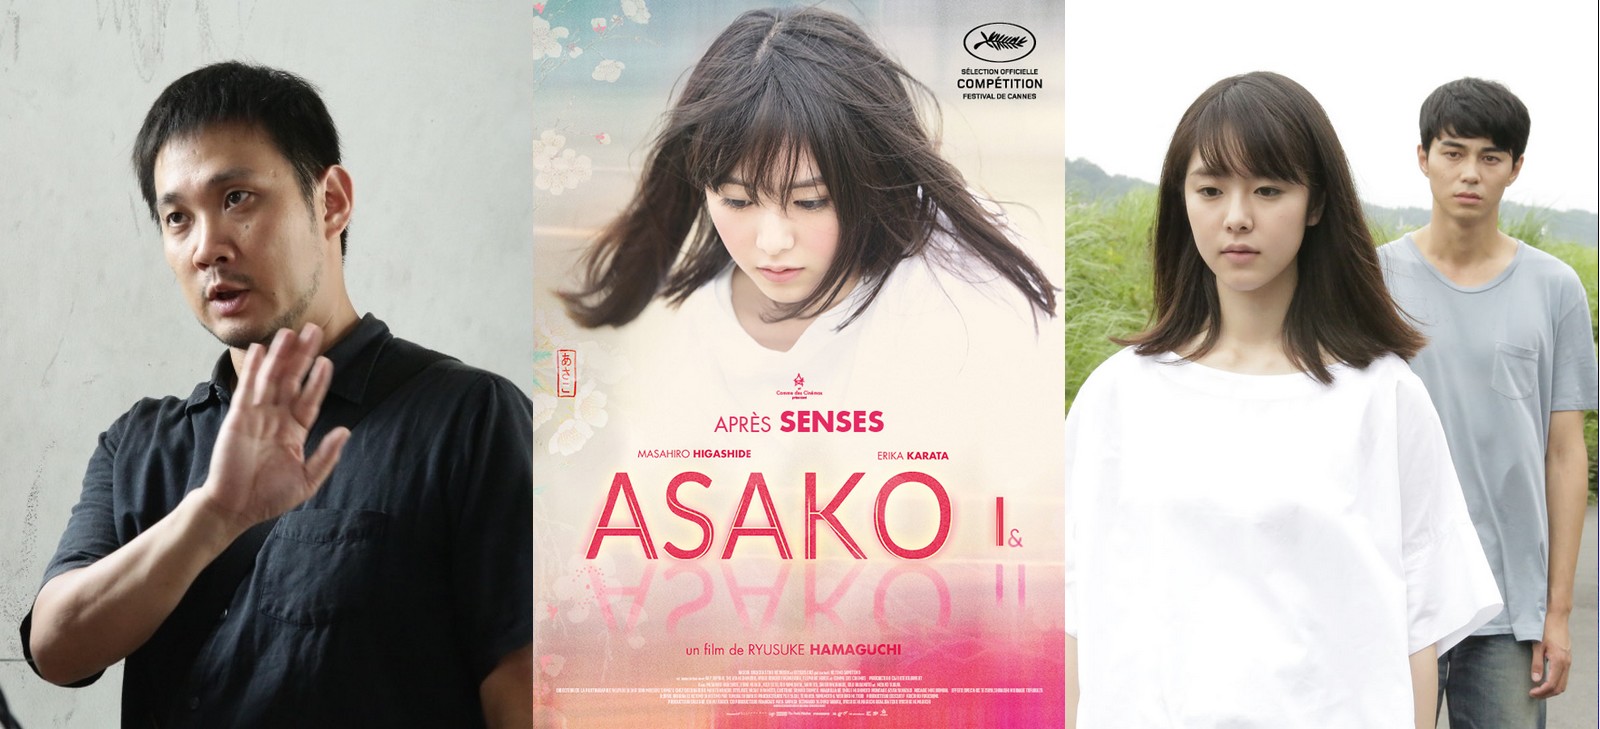 Ryusuke Hamaguchi, réalisateur du film Asako I&II, avec Masahiro Higashide (Ryôhei) et Erika Karata (Asako)